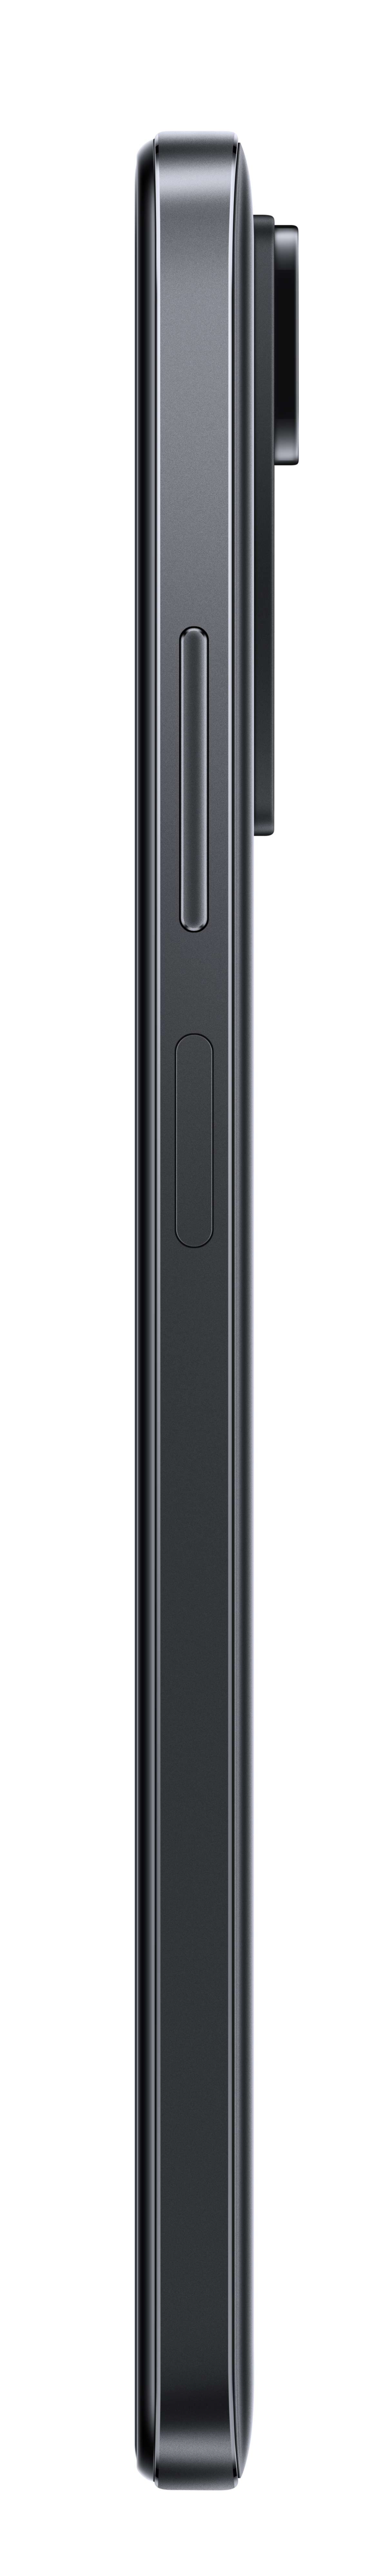 Xiaomi Redmi Note 11S Gris - Smartphone 6.43 6GB 64GB 4G